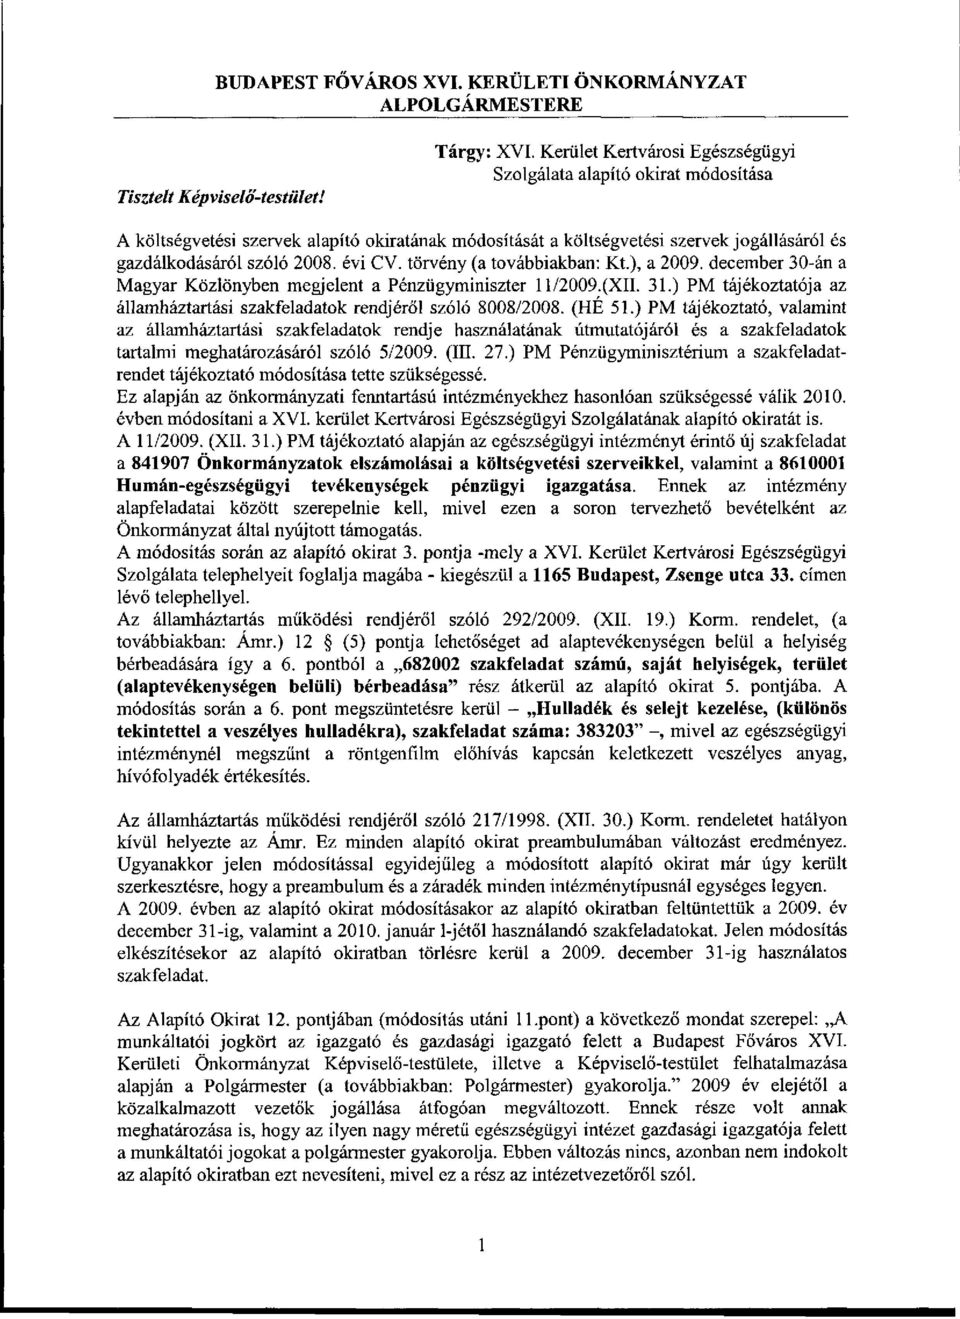 törvény (a továbbiakban: Kt), a 2009. december 30-án a Magyar Közlönyben megjelent a Pénzügyminiszter 11/2009.(XII. 31.) PM tájékoztatója az államháztartási szakfeladatok rendjéről szóló 8008/2008.